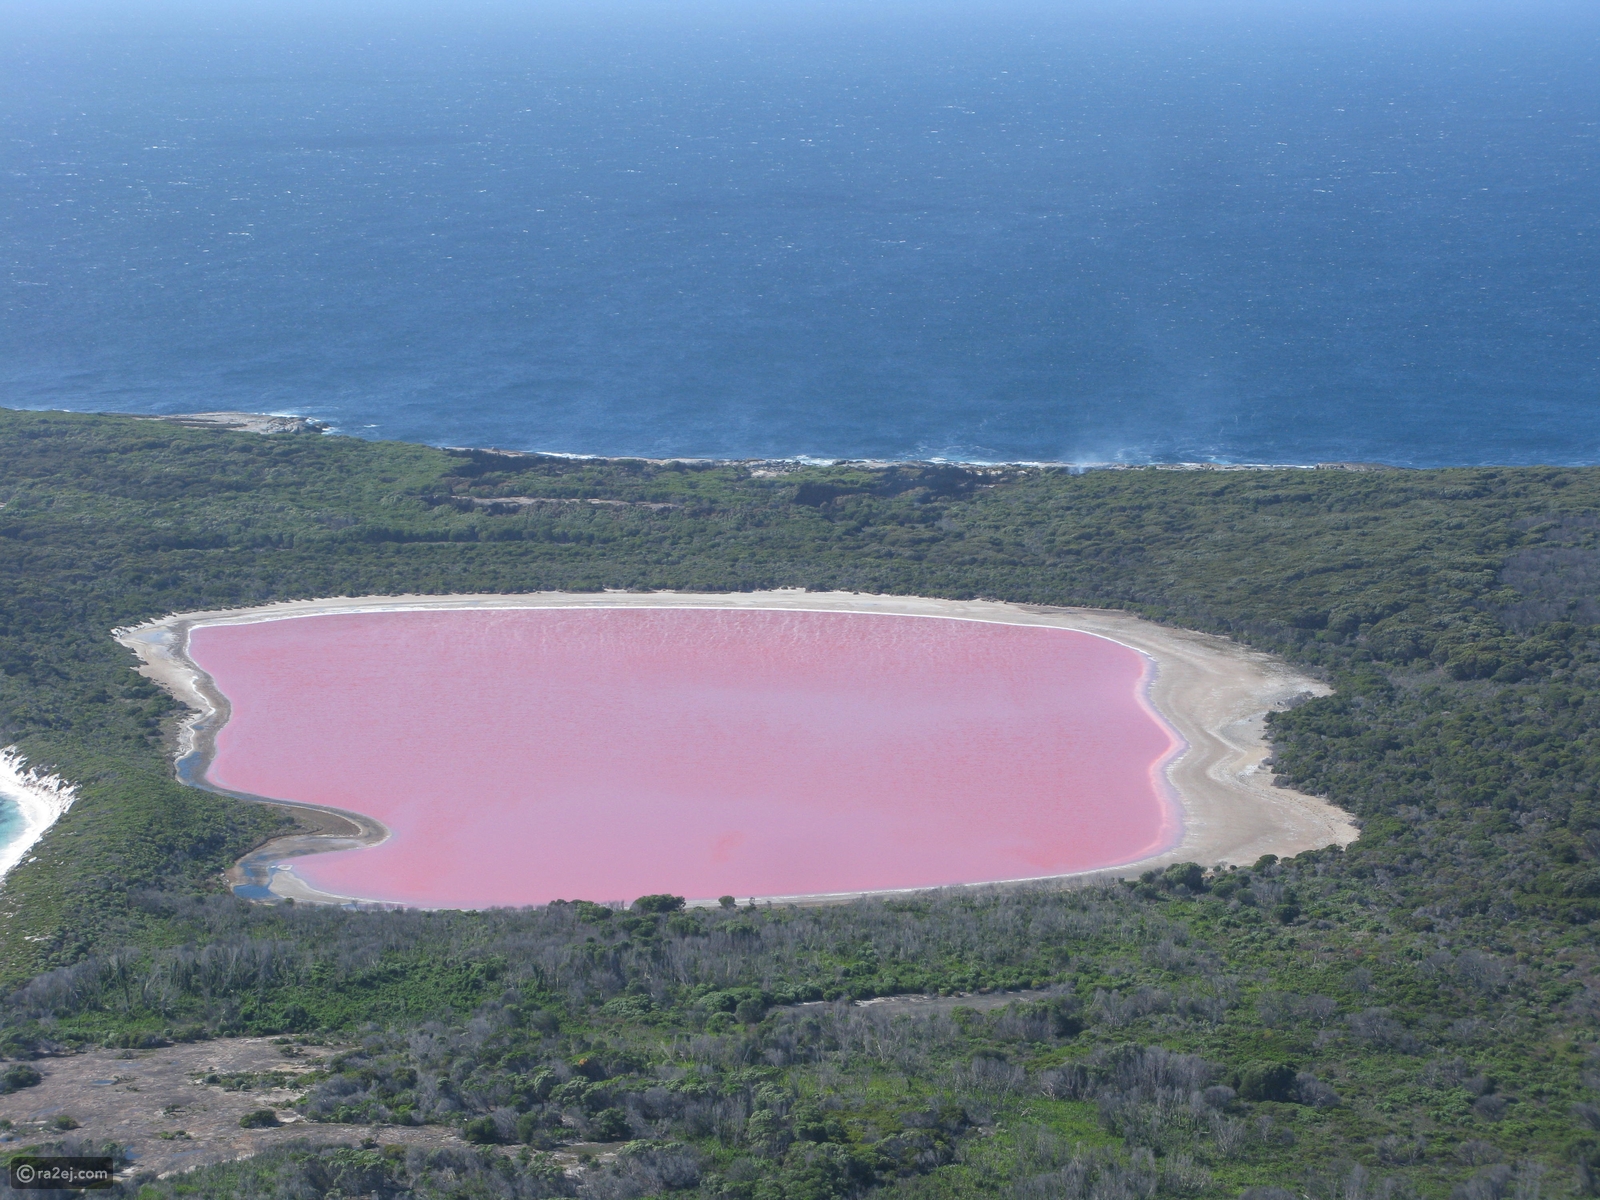 بحيرة هيلير أو البحيرة الوردية في غرب أستراليا 92d61bcd6433772285afcd50ecdcfc7069d107d2-041016125312.JPG?preset=v3